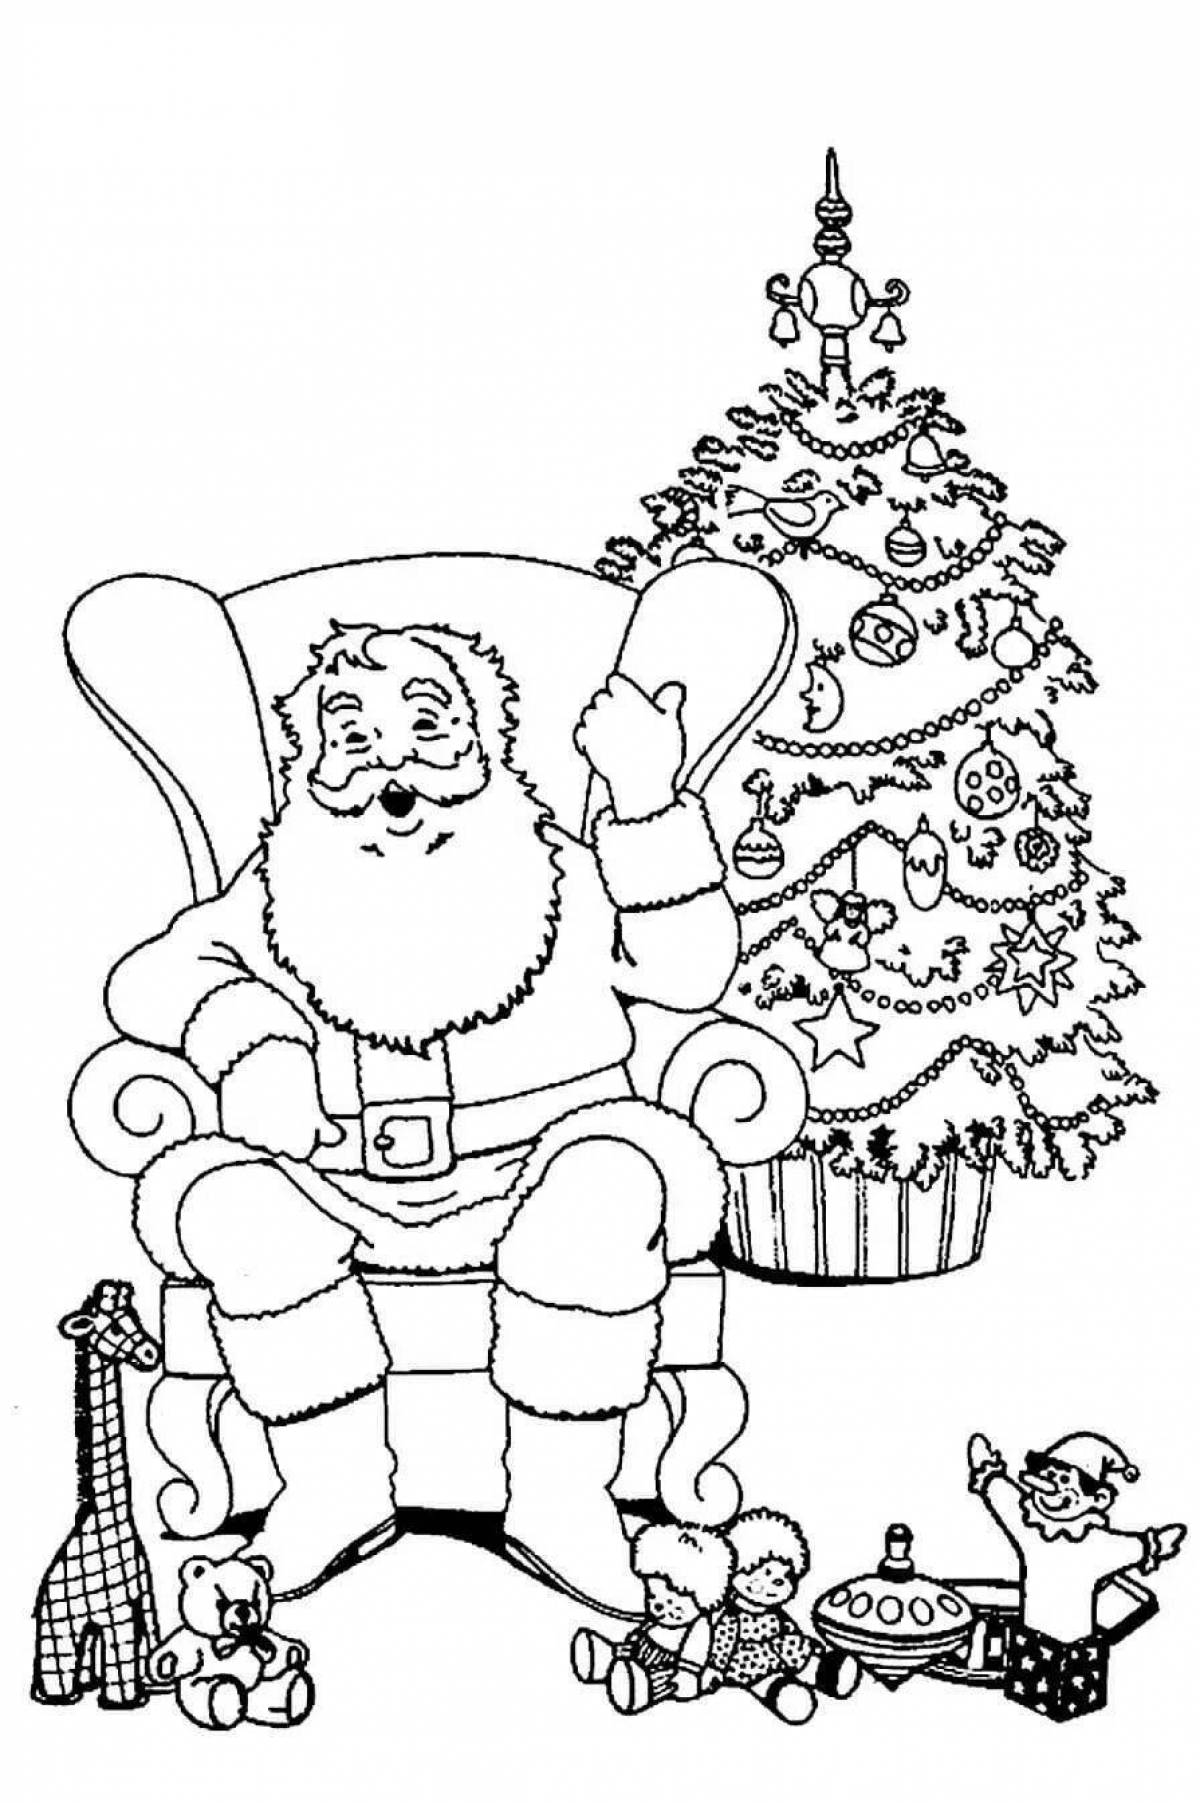 Adorable Santa Claus coloring book